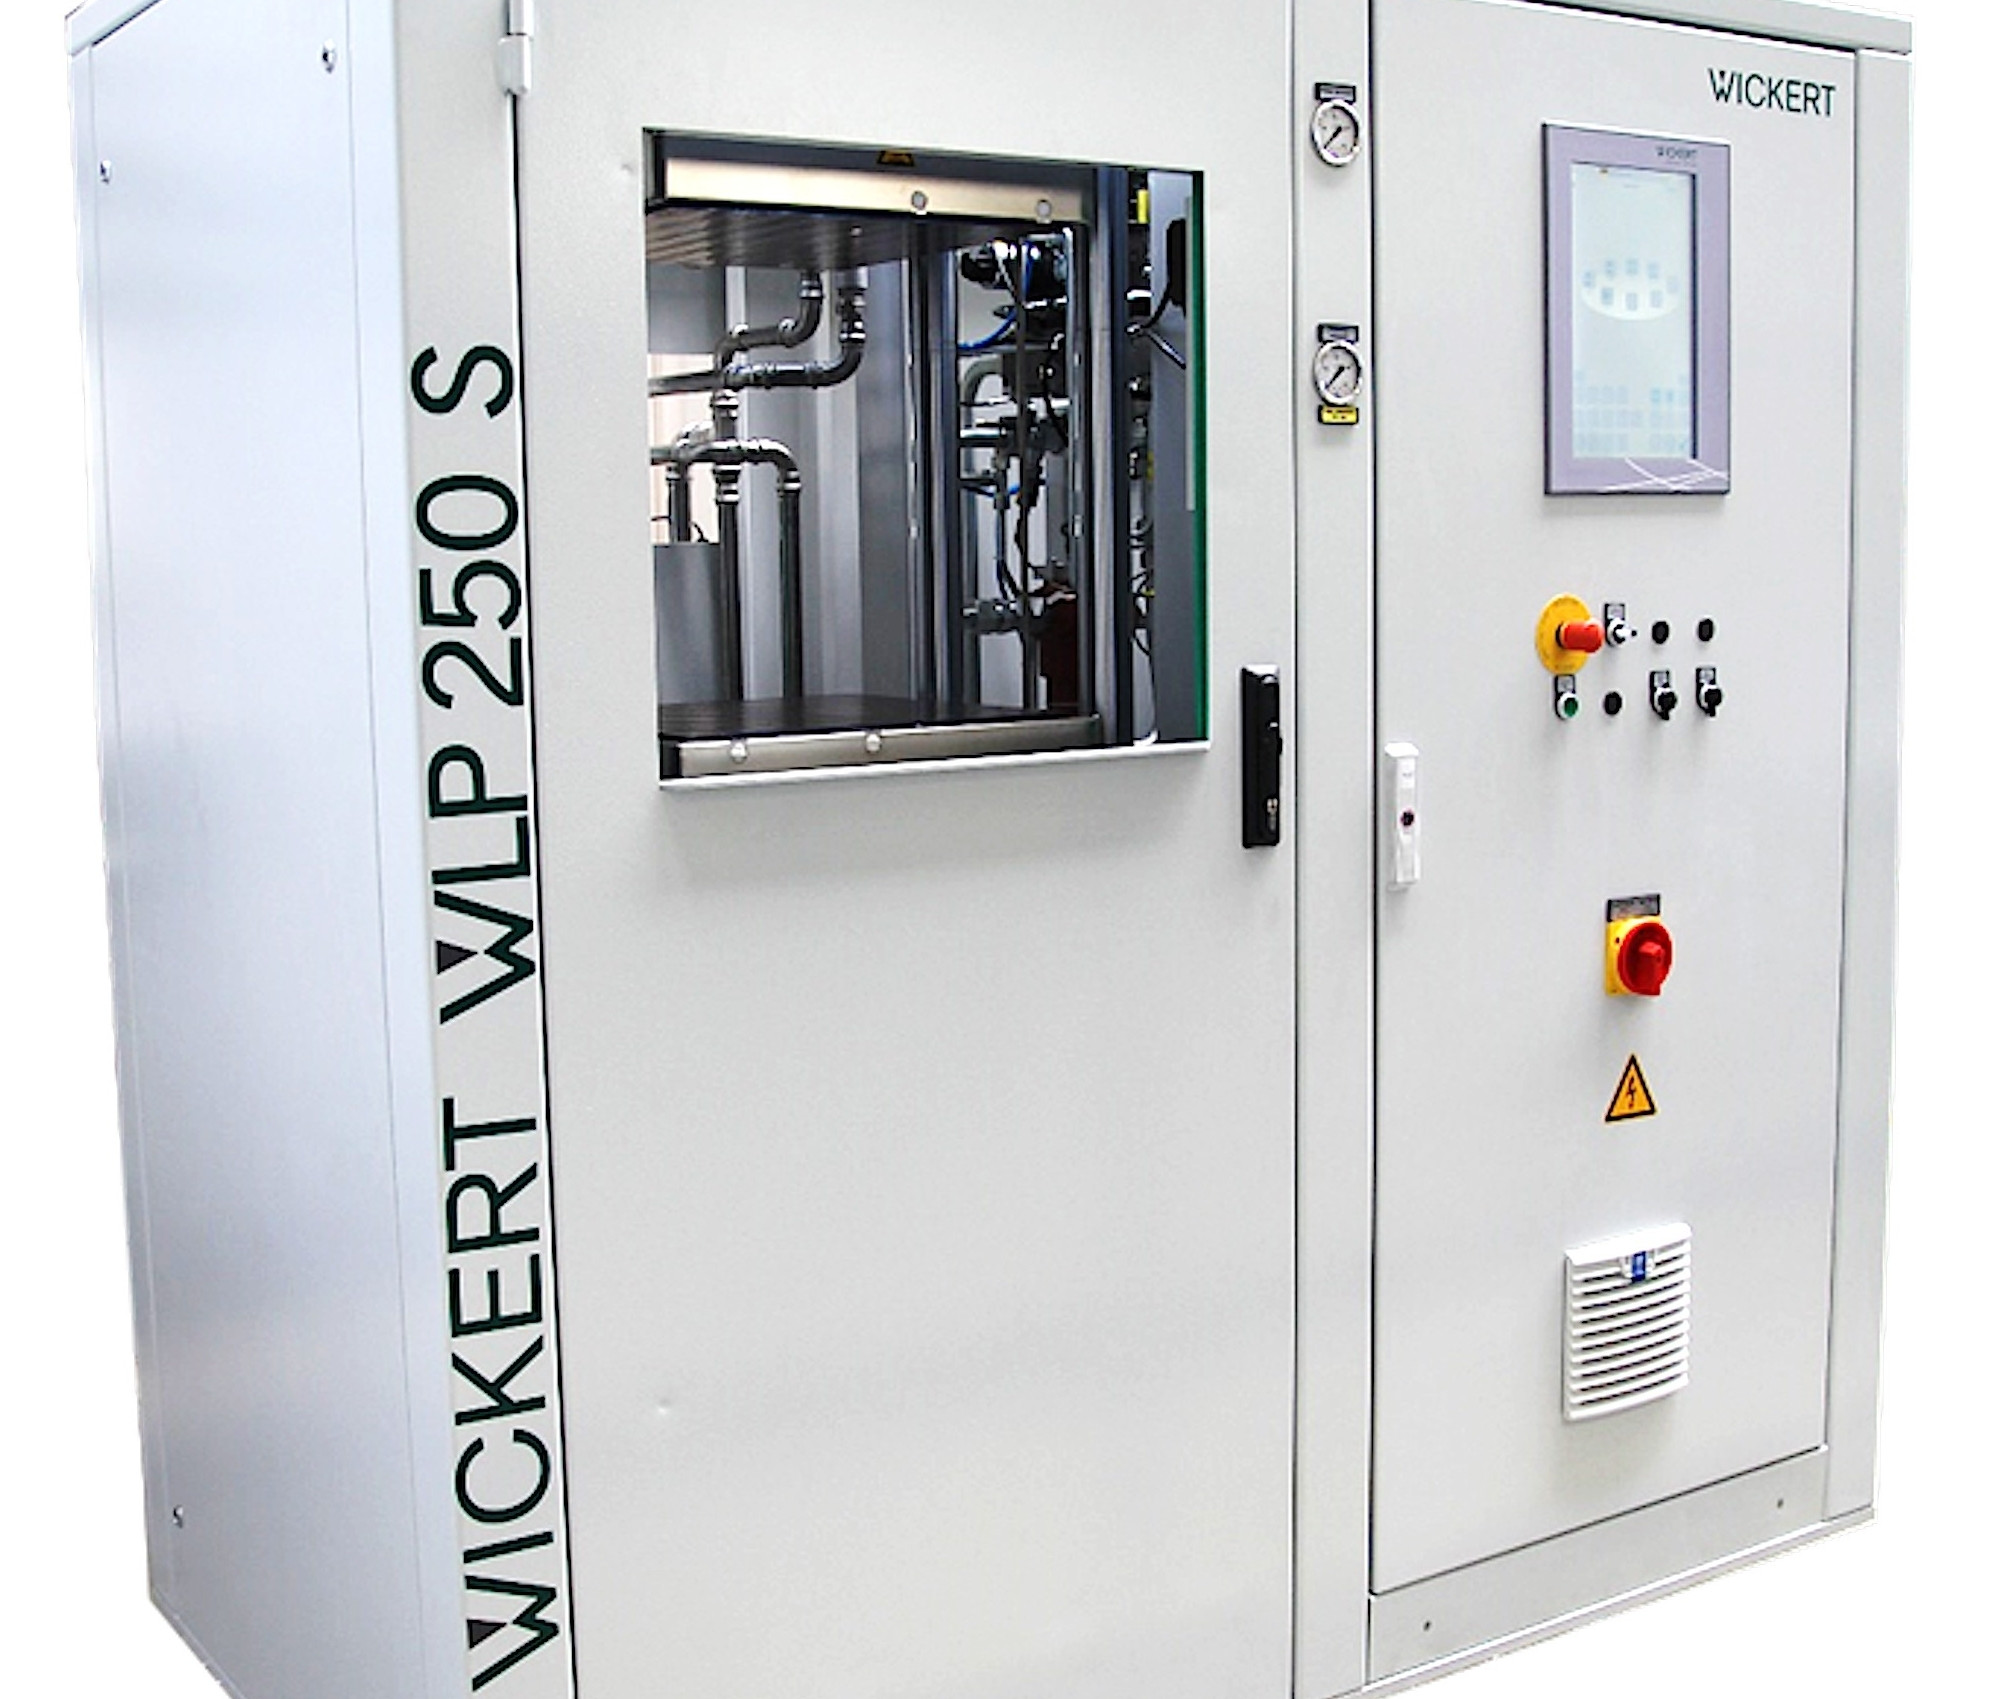 Wie Wickert Maschinenbau erklärt, ist die WLP 250 S ist die derzeit schnellste Heiz-Kühl-Presse der Welt. 